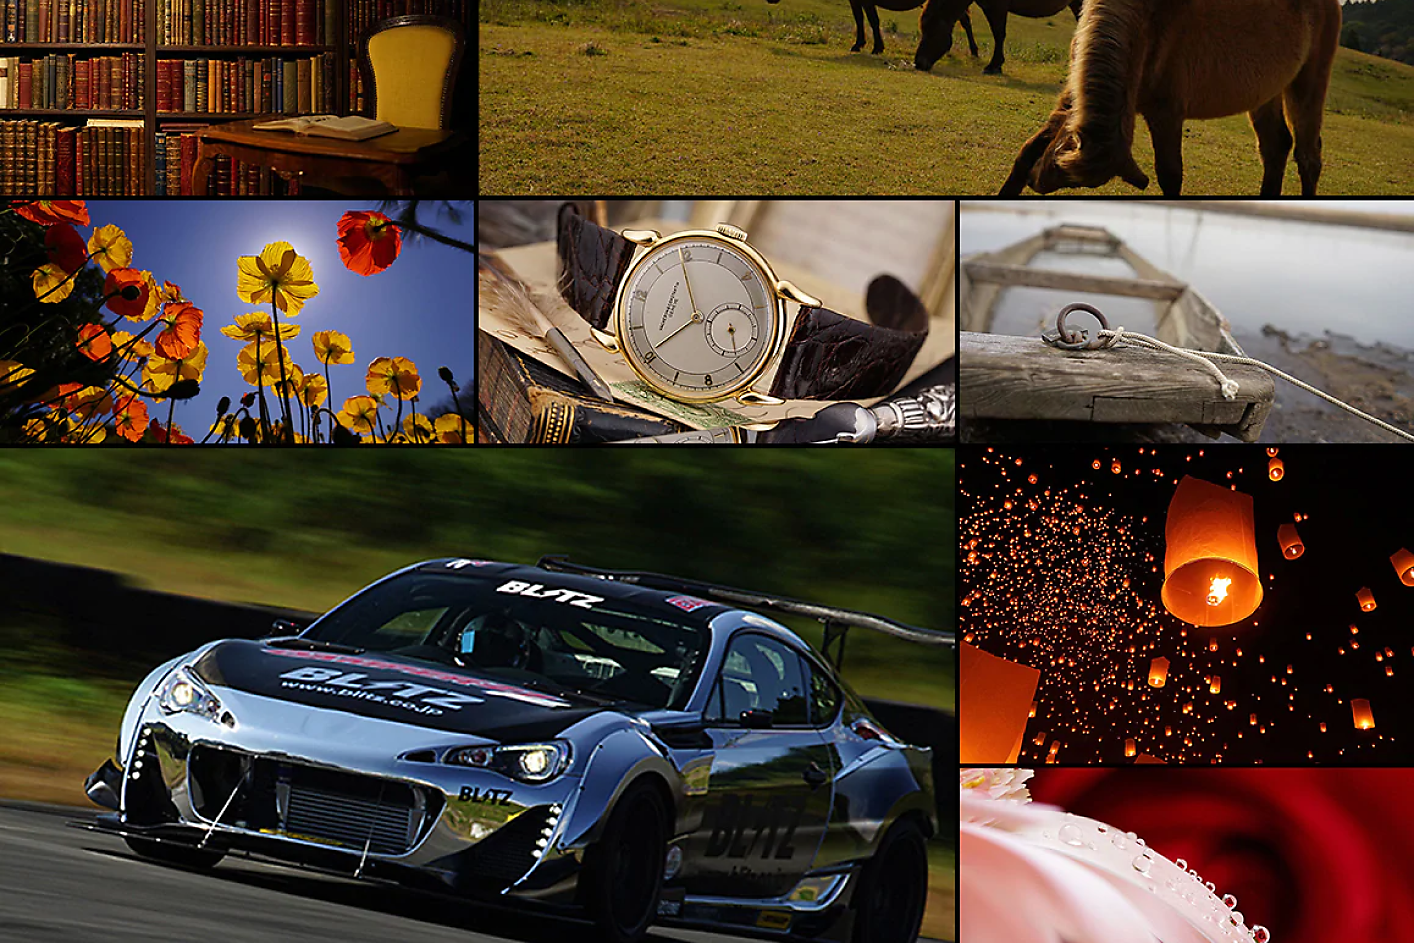 Цветен колаж с осем изображения, включително състезателна кола, кон, часовник и цветя